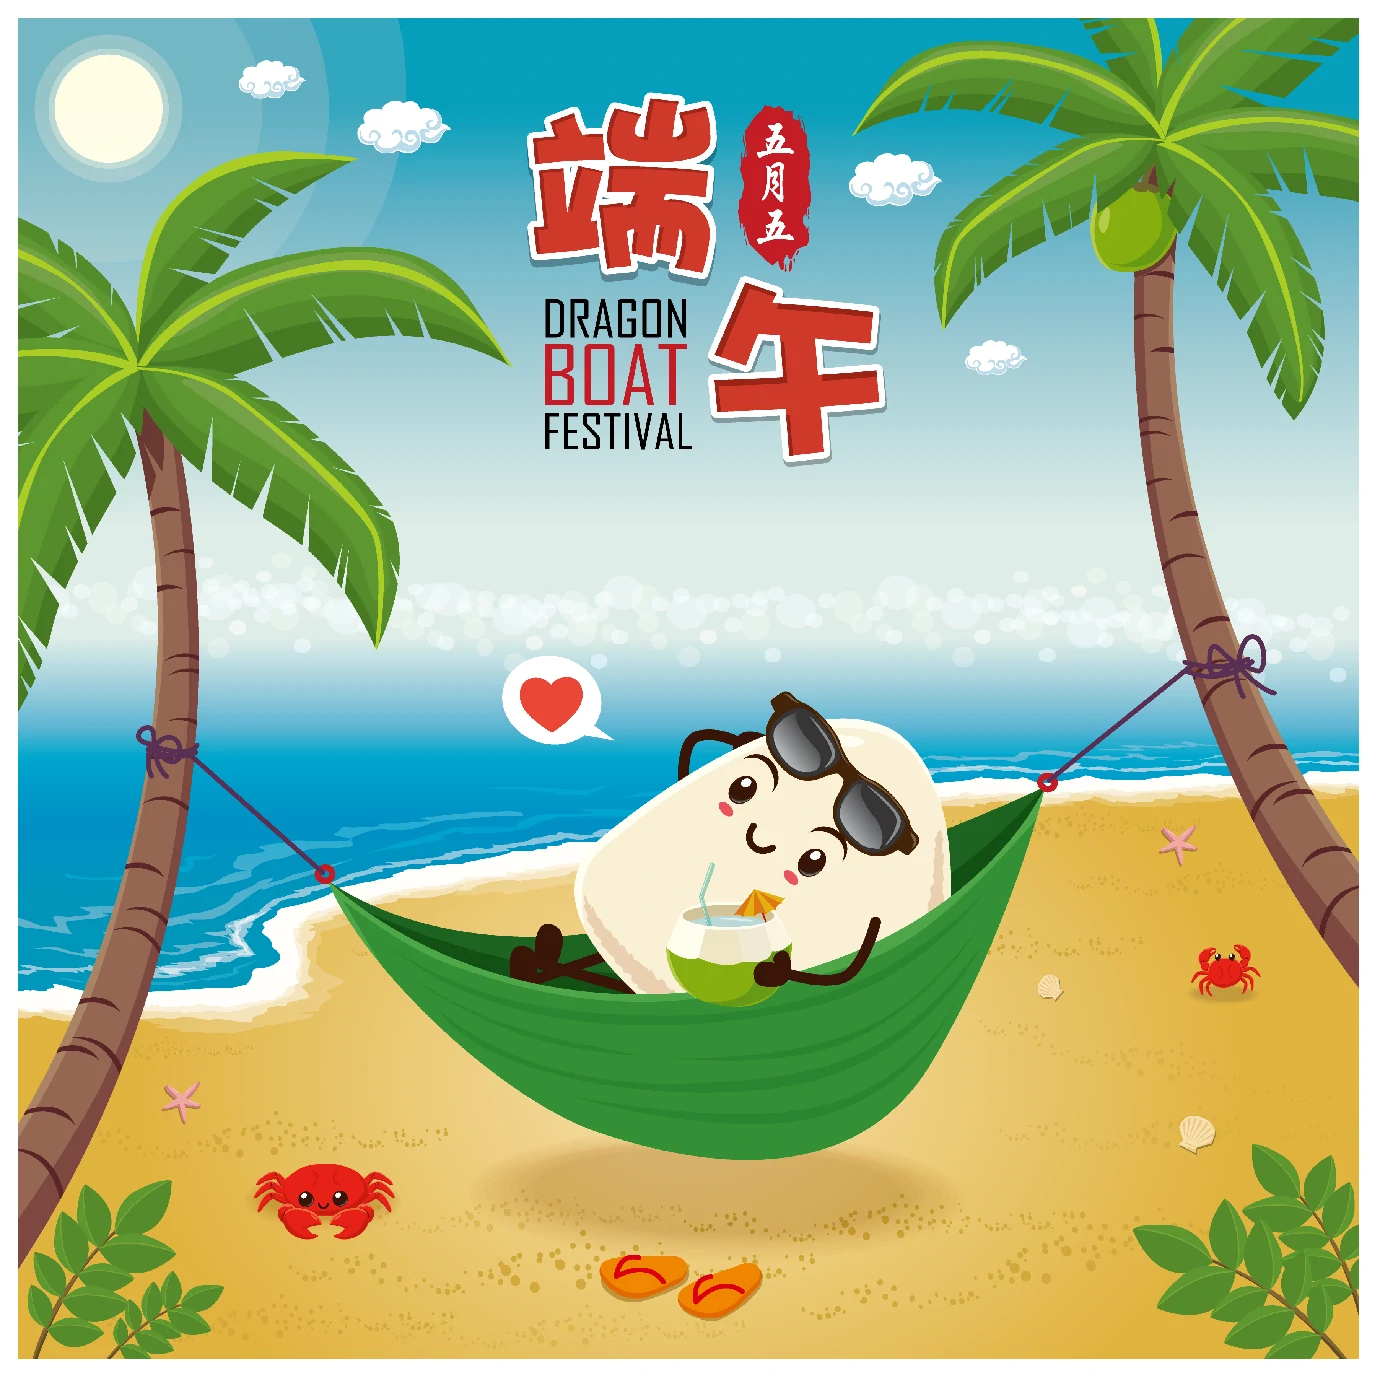 中国传统节日卡通手绘端午节赛龙舟粽子插画海报AI矢量设计素材【073】